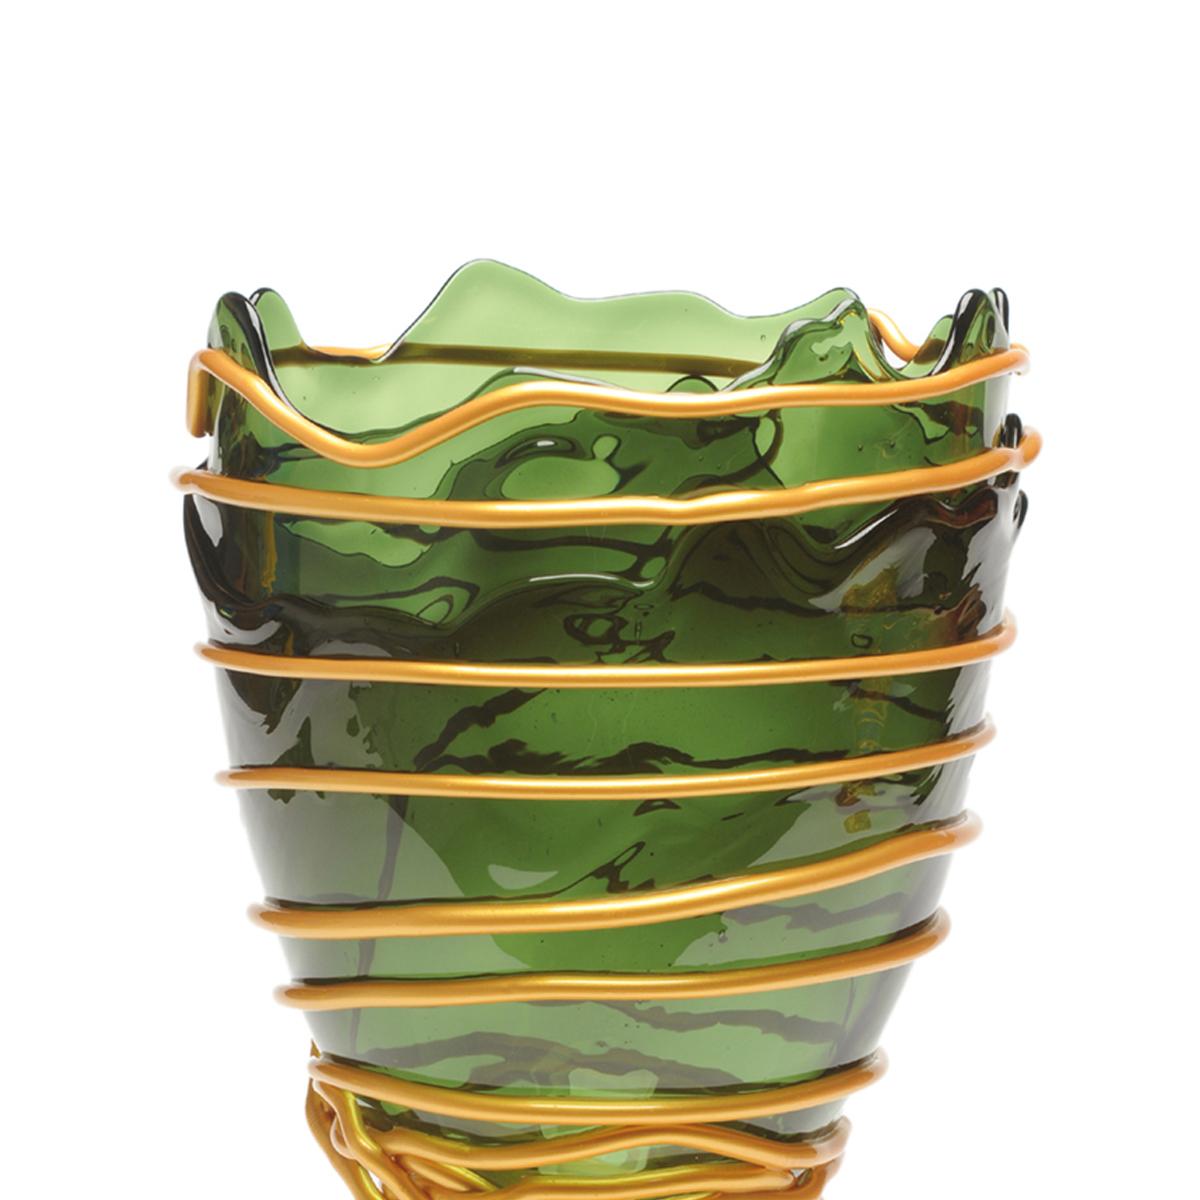 Vase Pompitu II, grün und gold.

Vase aus weichem Harz, entworfen von Gaetano Pesce im Jahr 1995 für die Collection'S Fish Design.

Maße: M ø 16cm x H 26cm

Andere Größen verfügbar

Farben: grün und gold.
Vase aus weichem Harz, entworfen